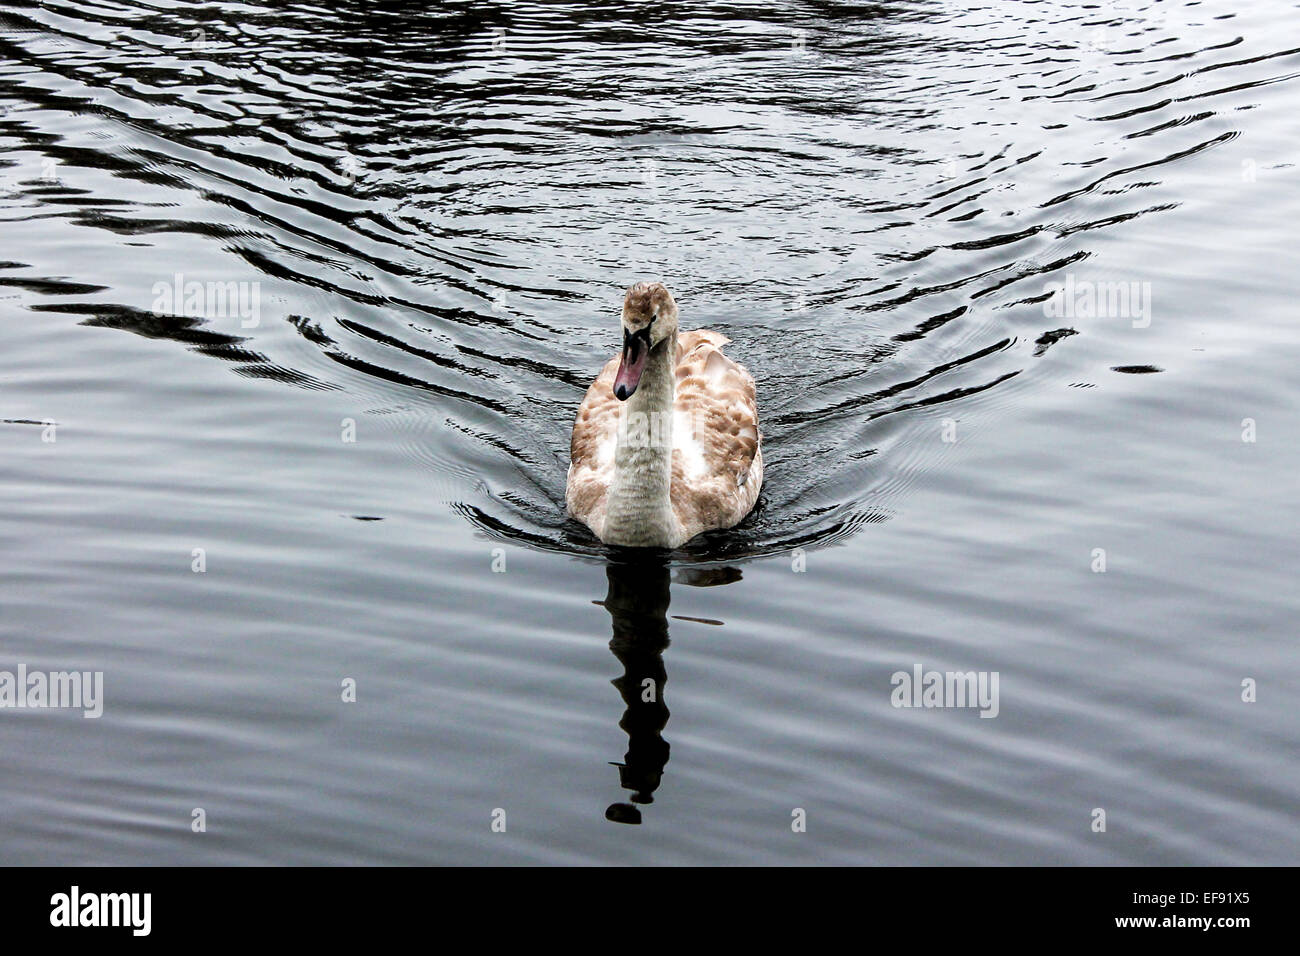 Swan at Daisy Nook. Stock Photo